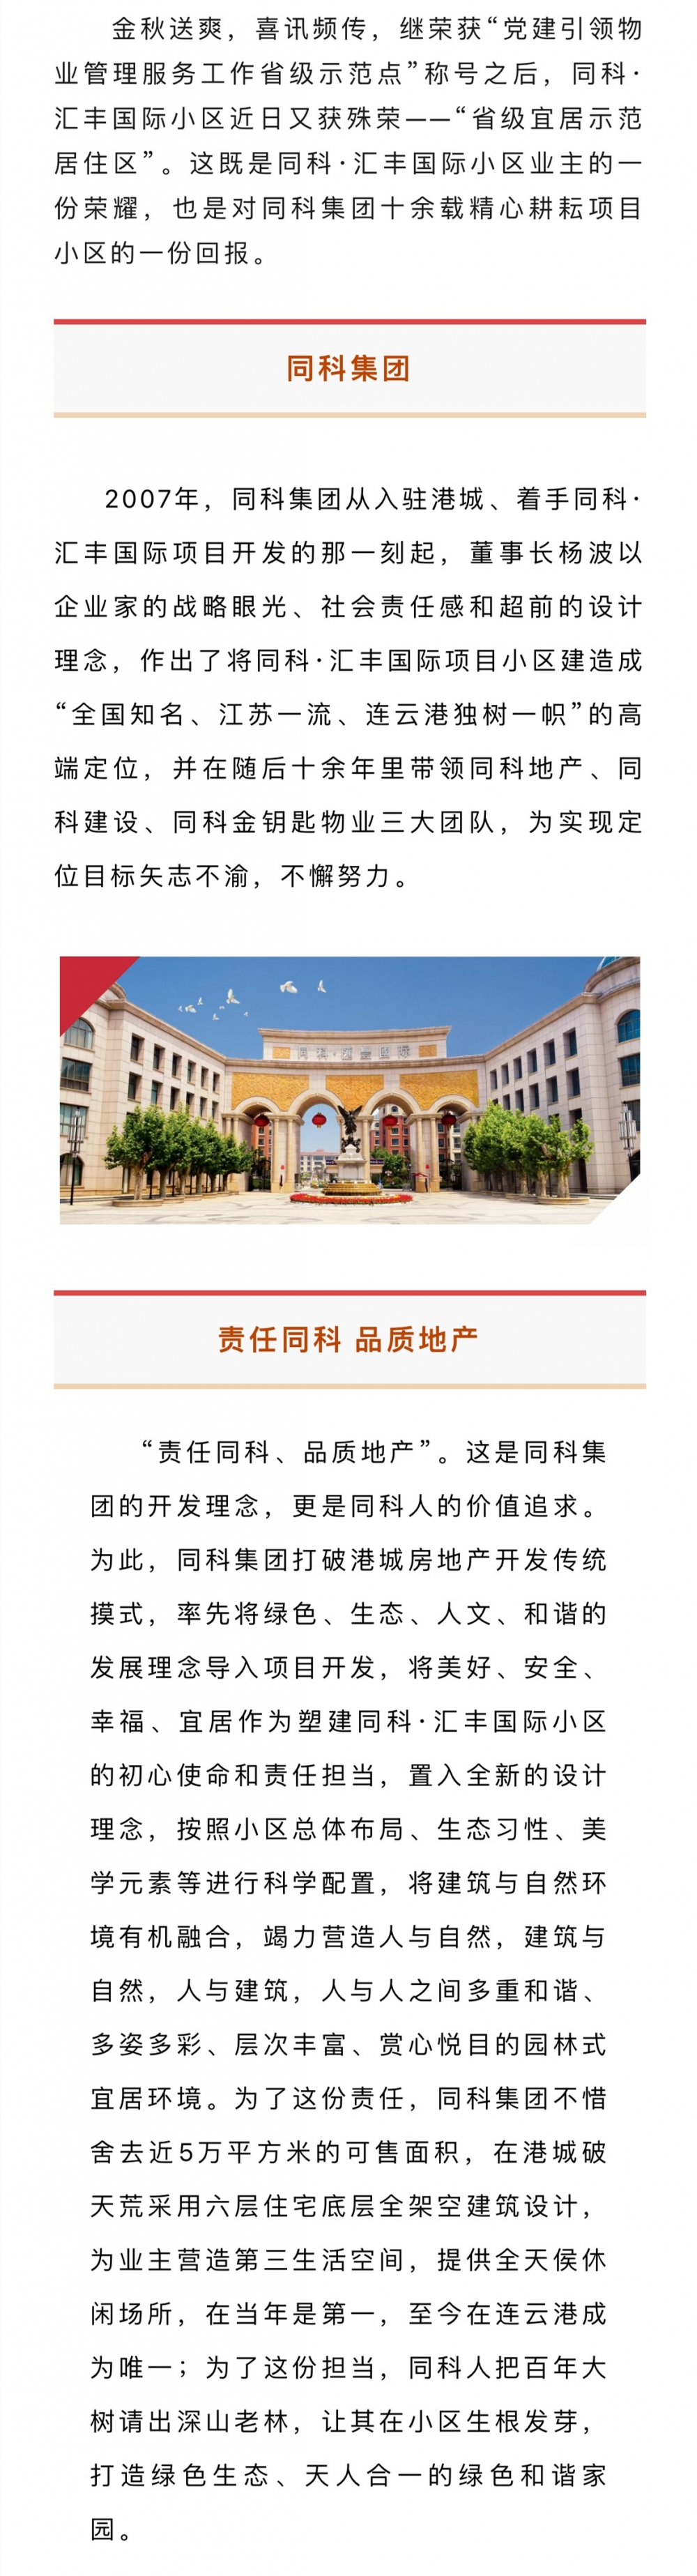 同科·汇丰国际小区荣获省级宜居示范居住区称号-连云港房产网